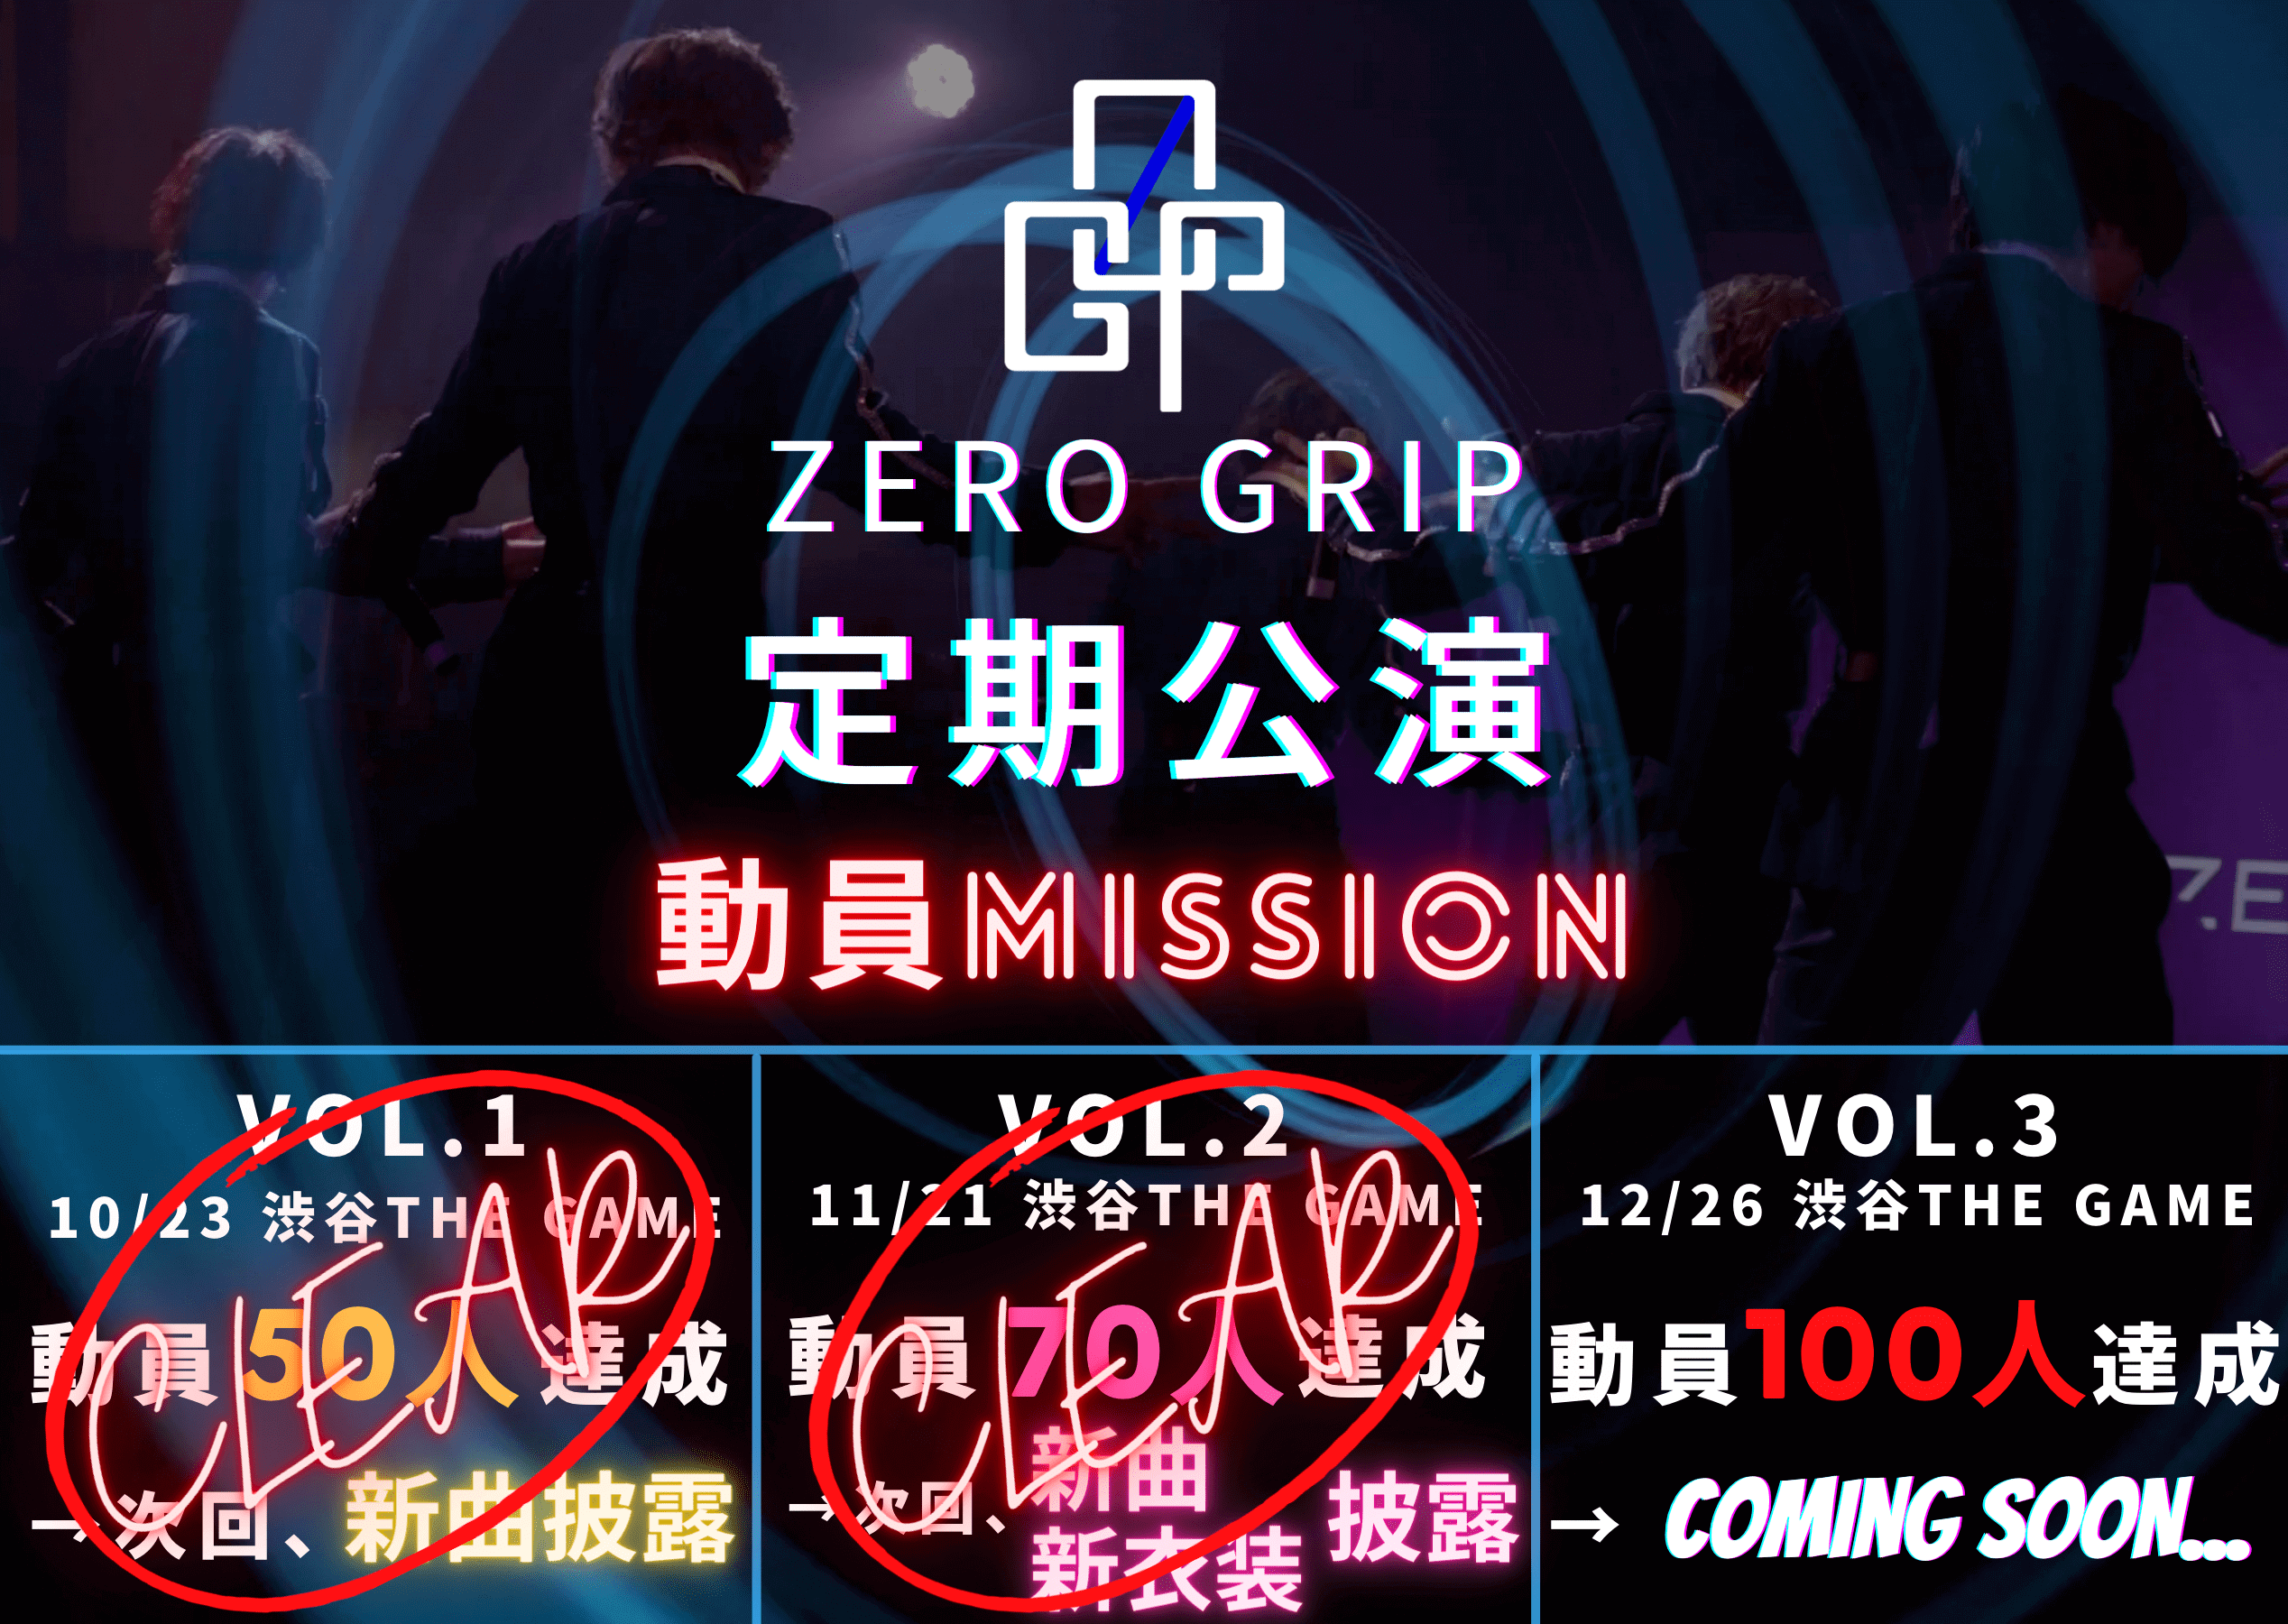 ZERO GRIP 定期公演 Vol.3